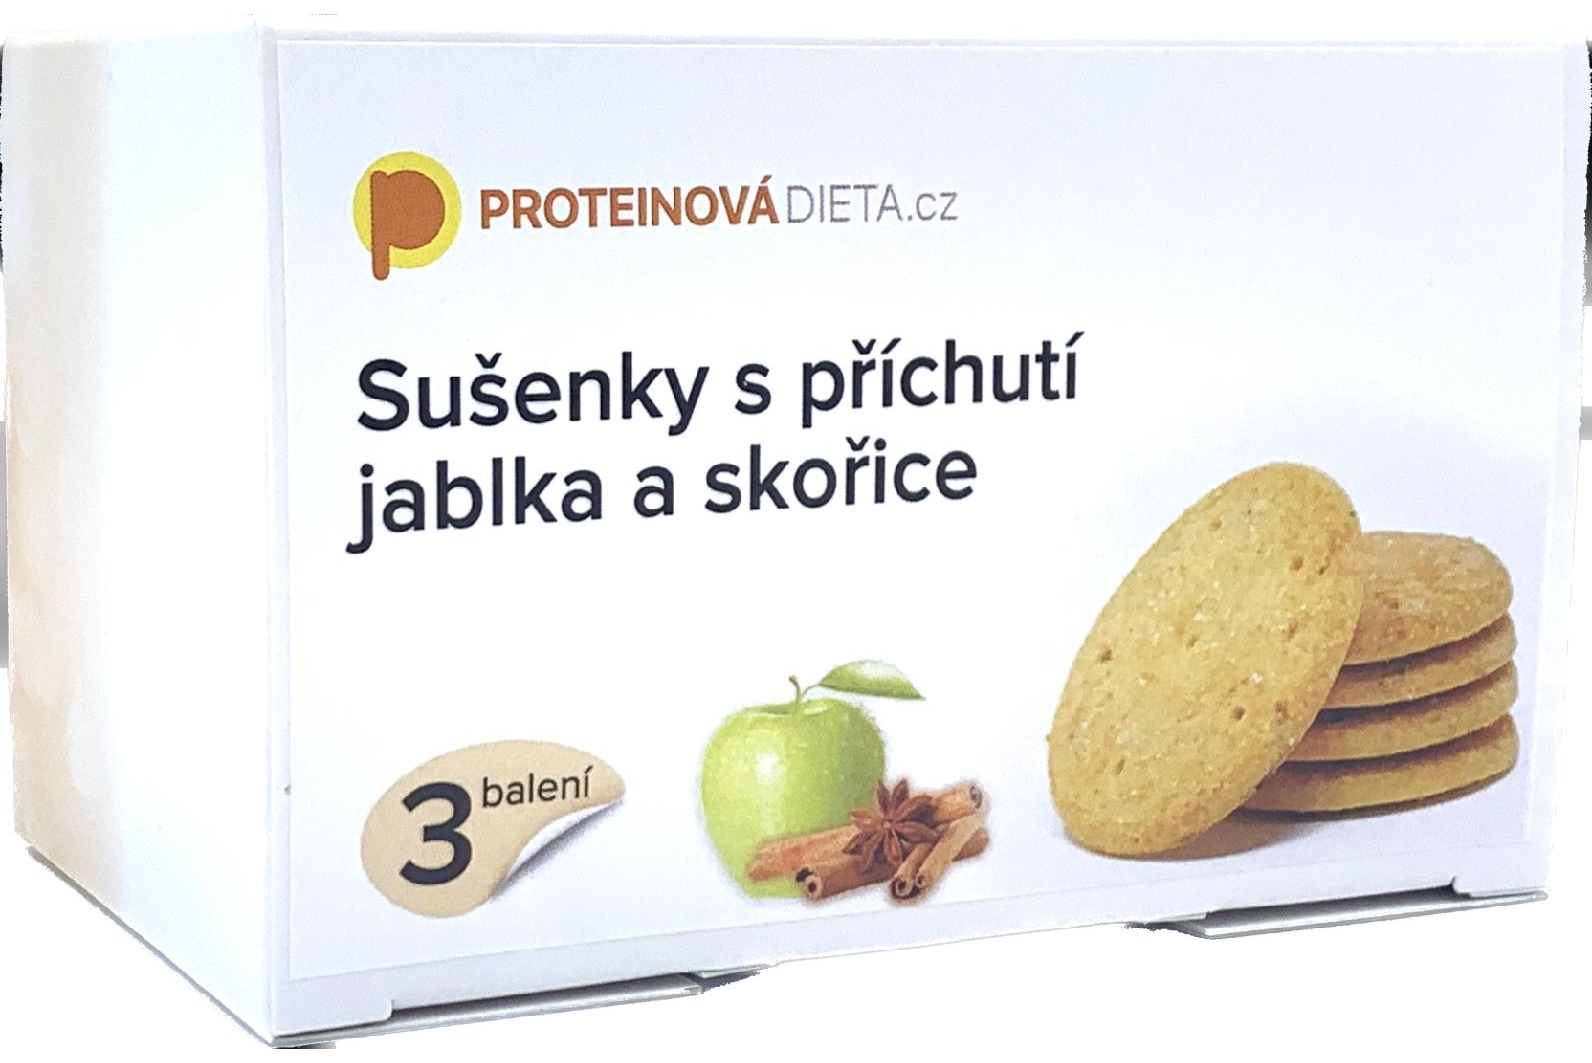 Proteinová Dieta Sušenky s příchutí JABLKA a SKOŘICE (3 balení)